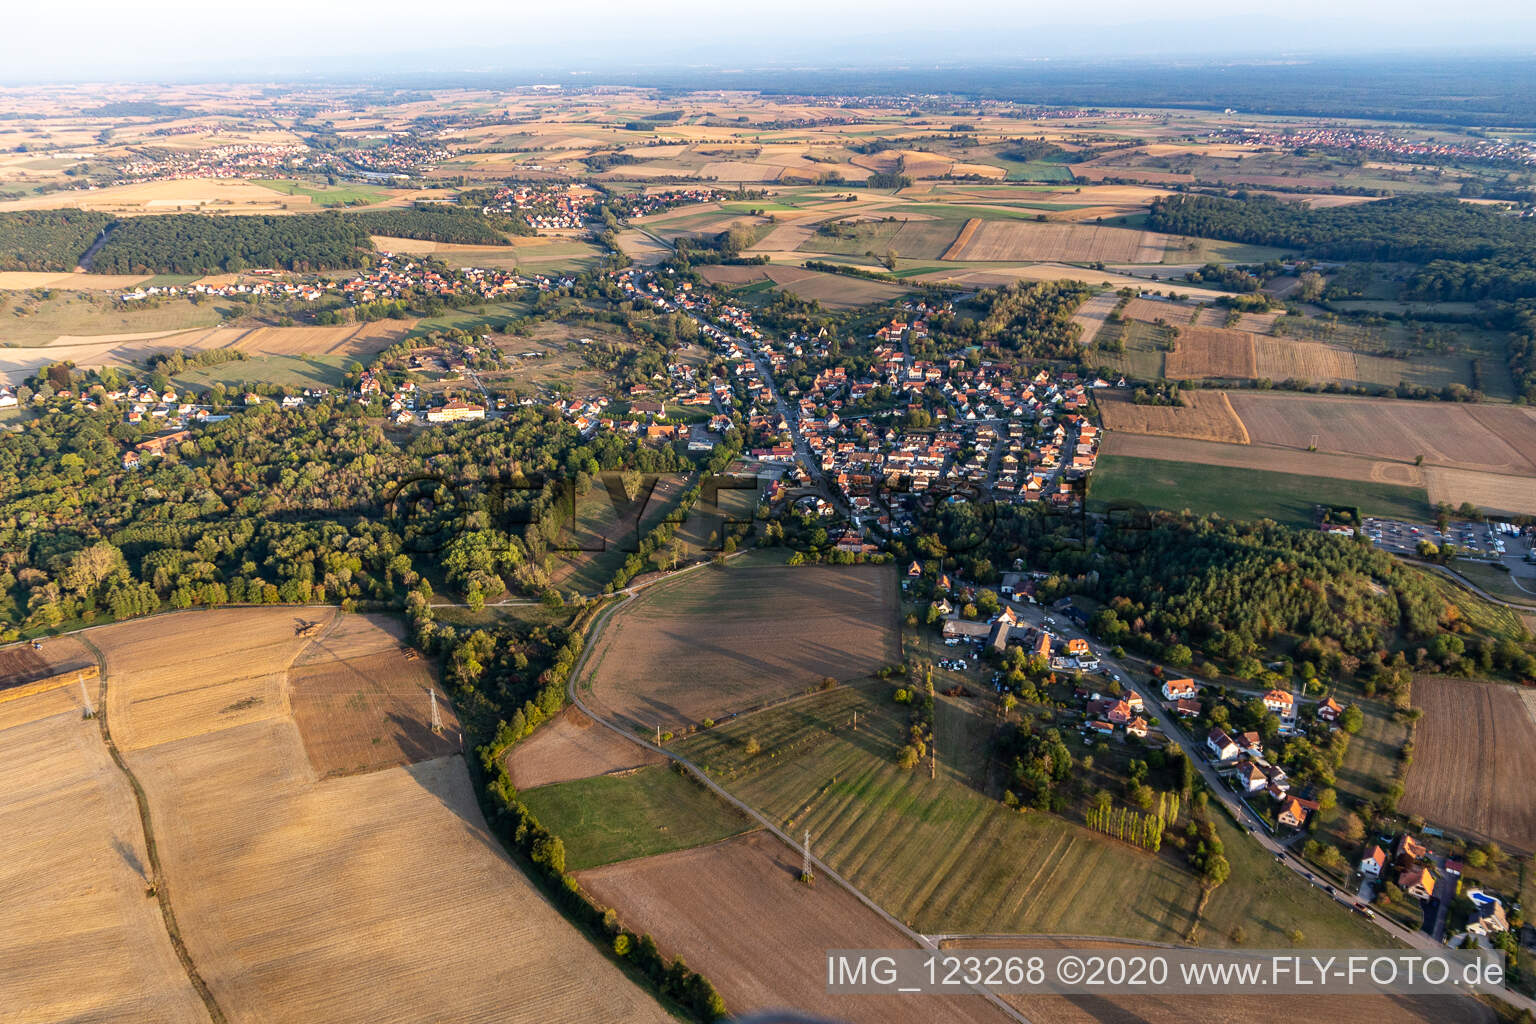 Merkwiller-Pechelbronn in the state Bas-Rhin, France seen from above